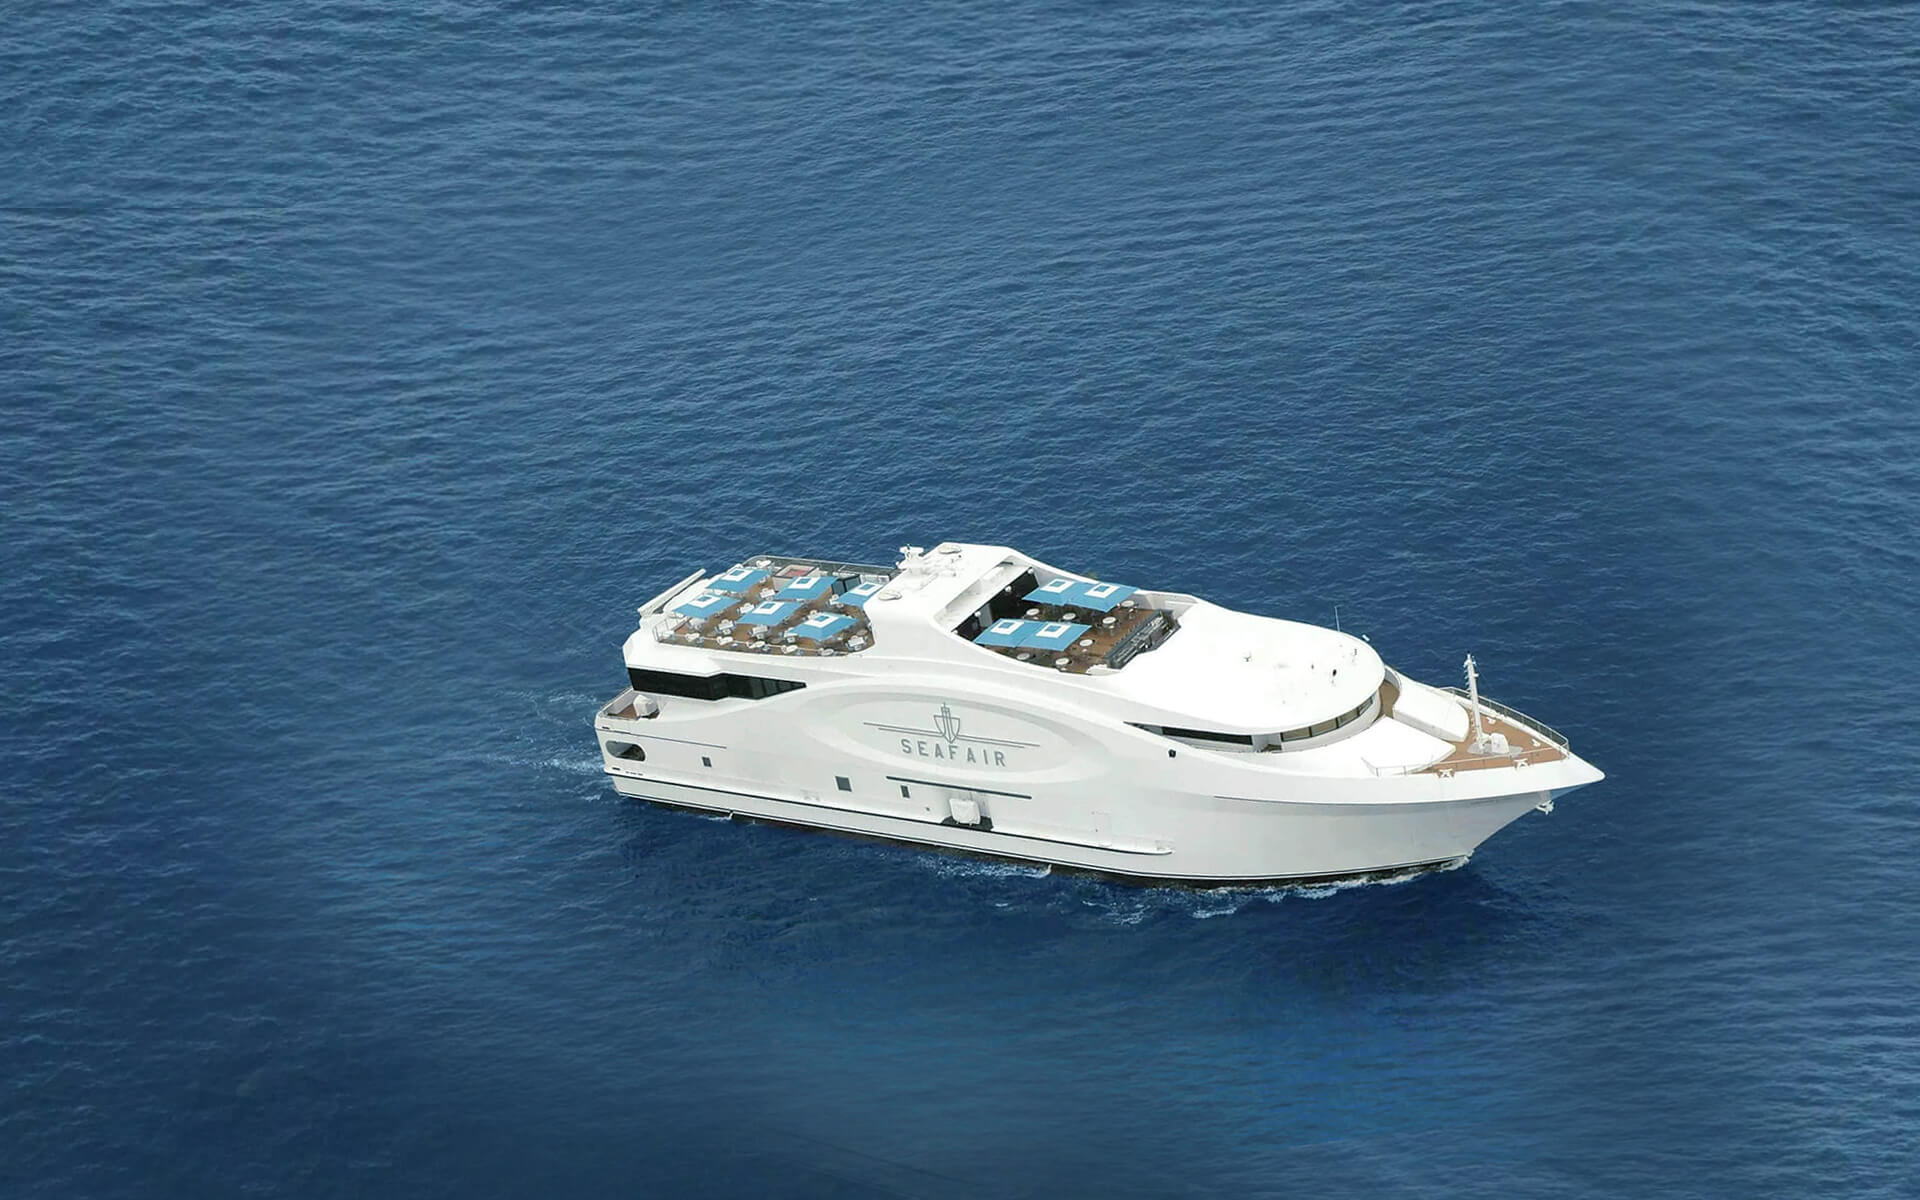 seafair yacht new year's